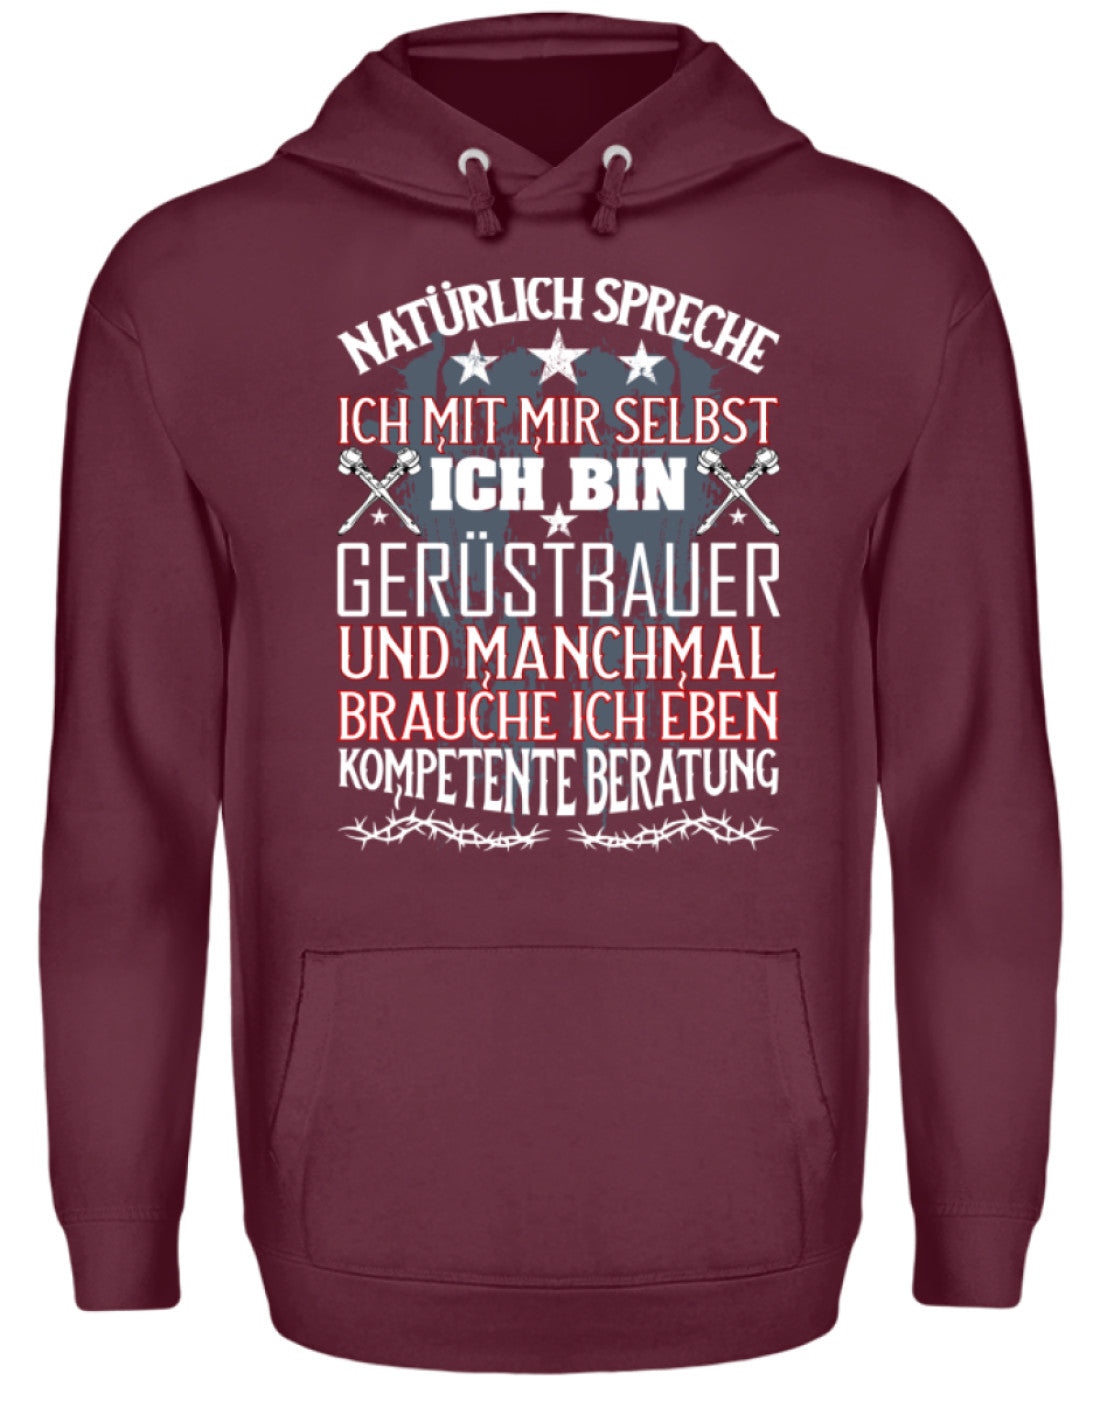 Gerüstbauer / Kompetente Beratung €34.95 Gerüstbauer - Shop >>